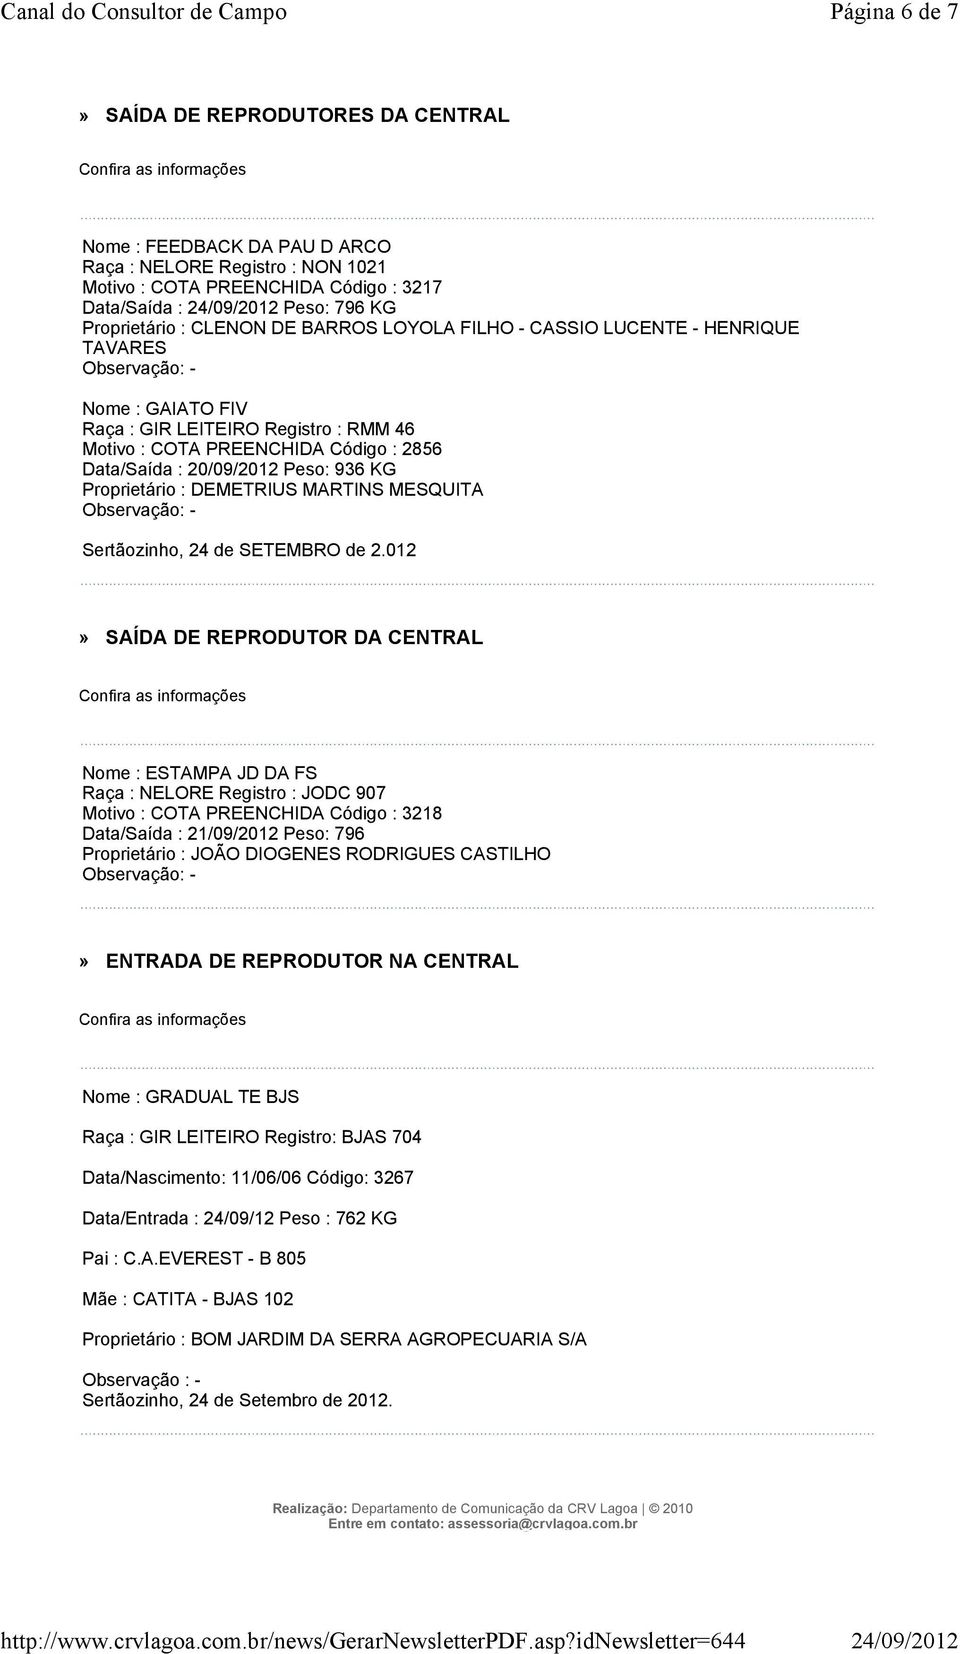 Data/Saída : 20/09/2012 Peso: 936 KG Proprietário : DEMETRIUS MARTINS MESQUITA Observação: - Sertãozinho, 24 de SETEMBRO de 2.